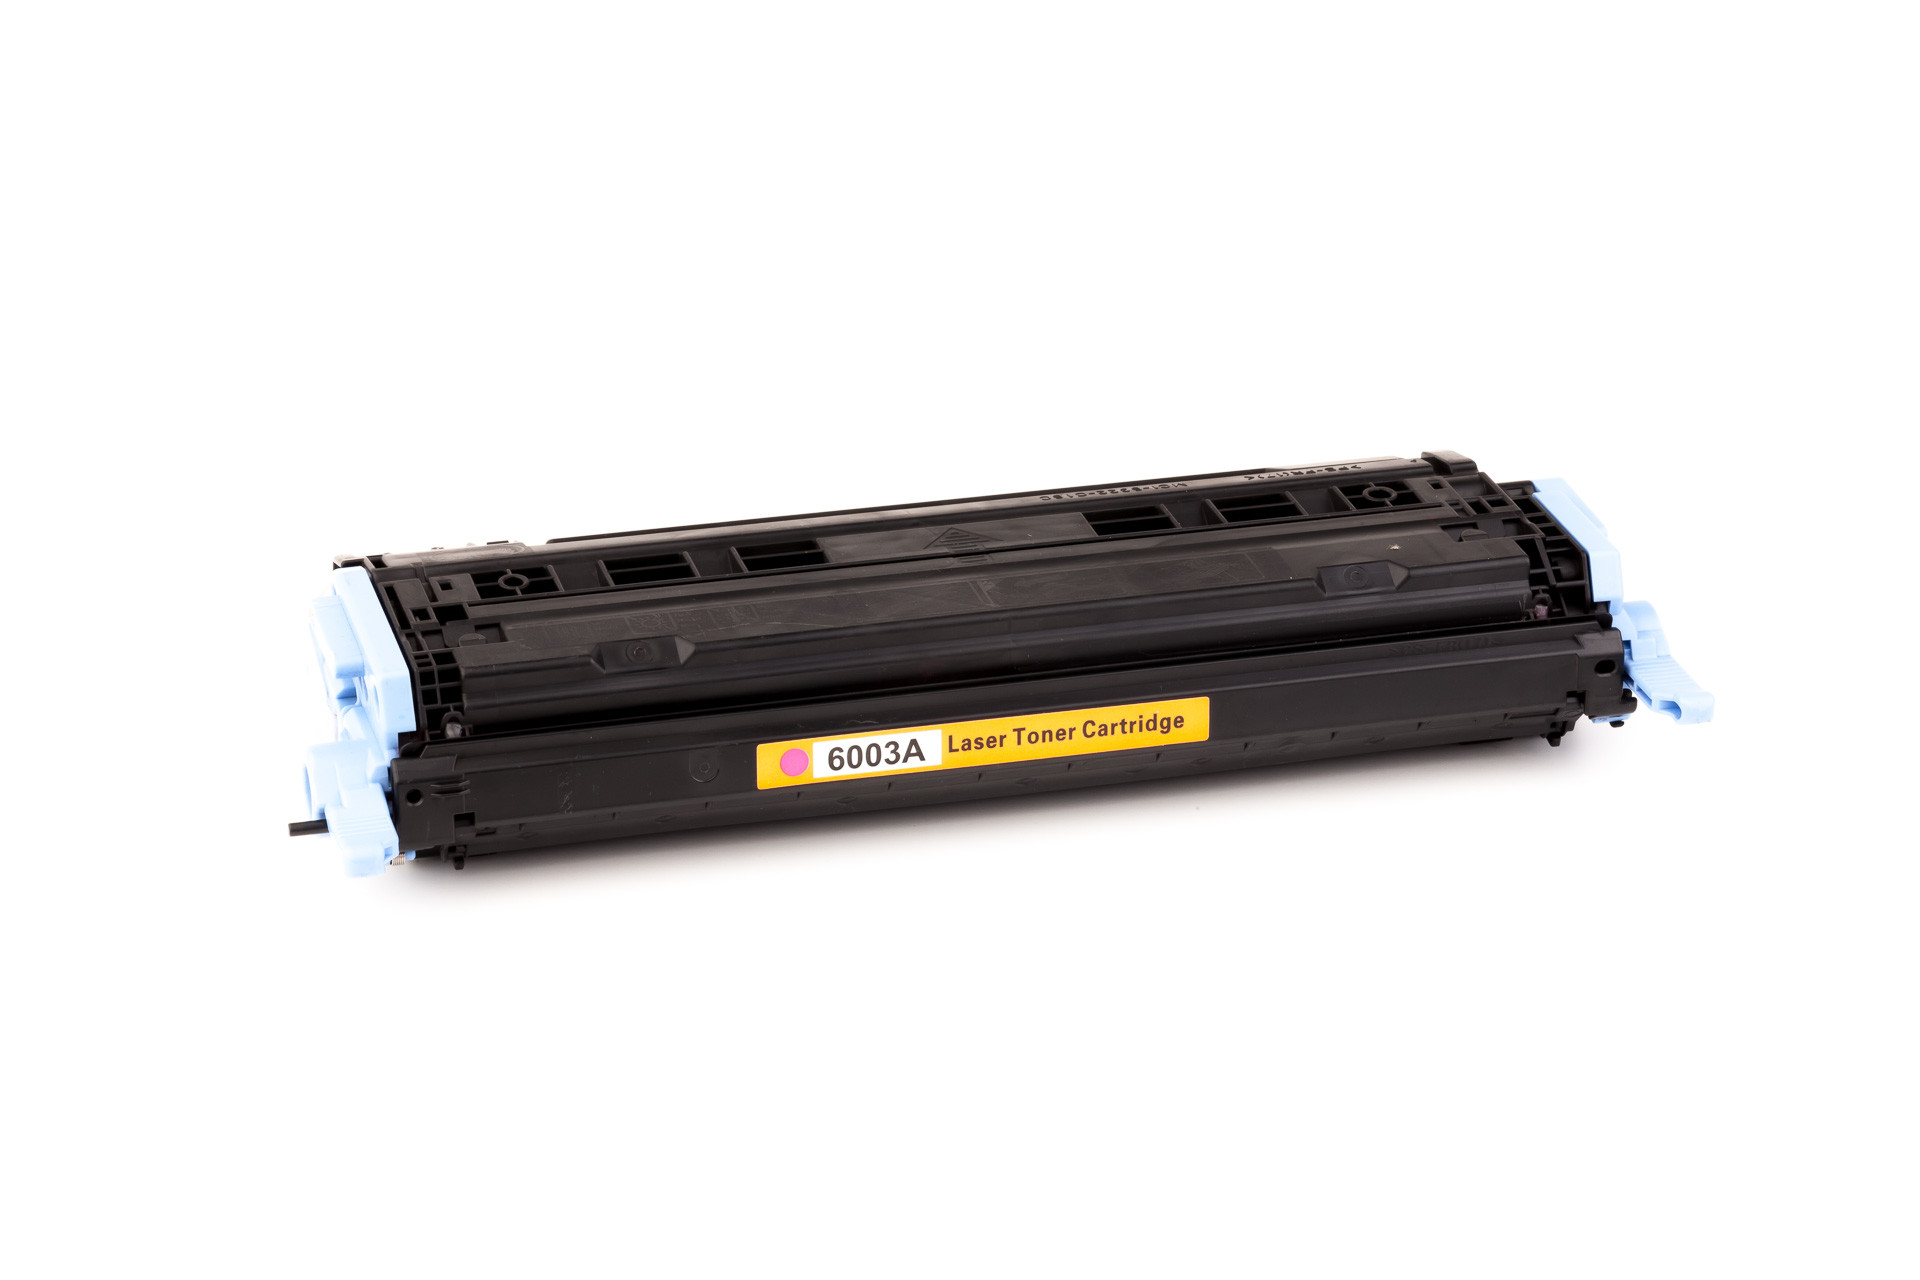 Cartucho de toner (alternativo) compatible a HP Color Laserjet 1600 - Q6003A - / 2600 / 2605 / CM 1015 / 1017 / Canon LBP-5000 / CRG 707M / 707 M magenta